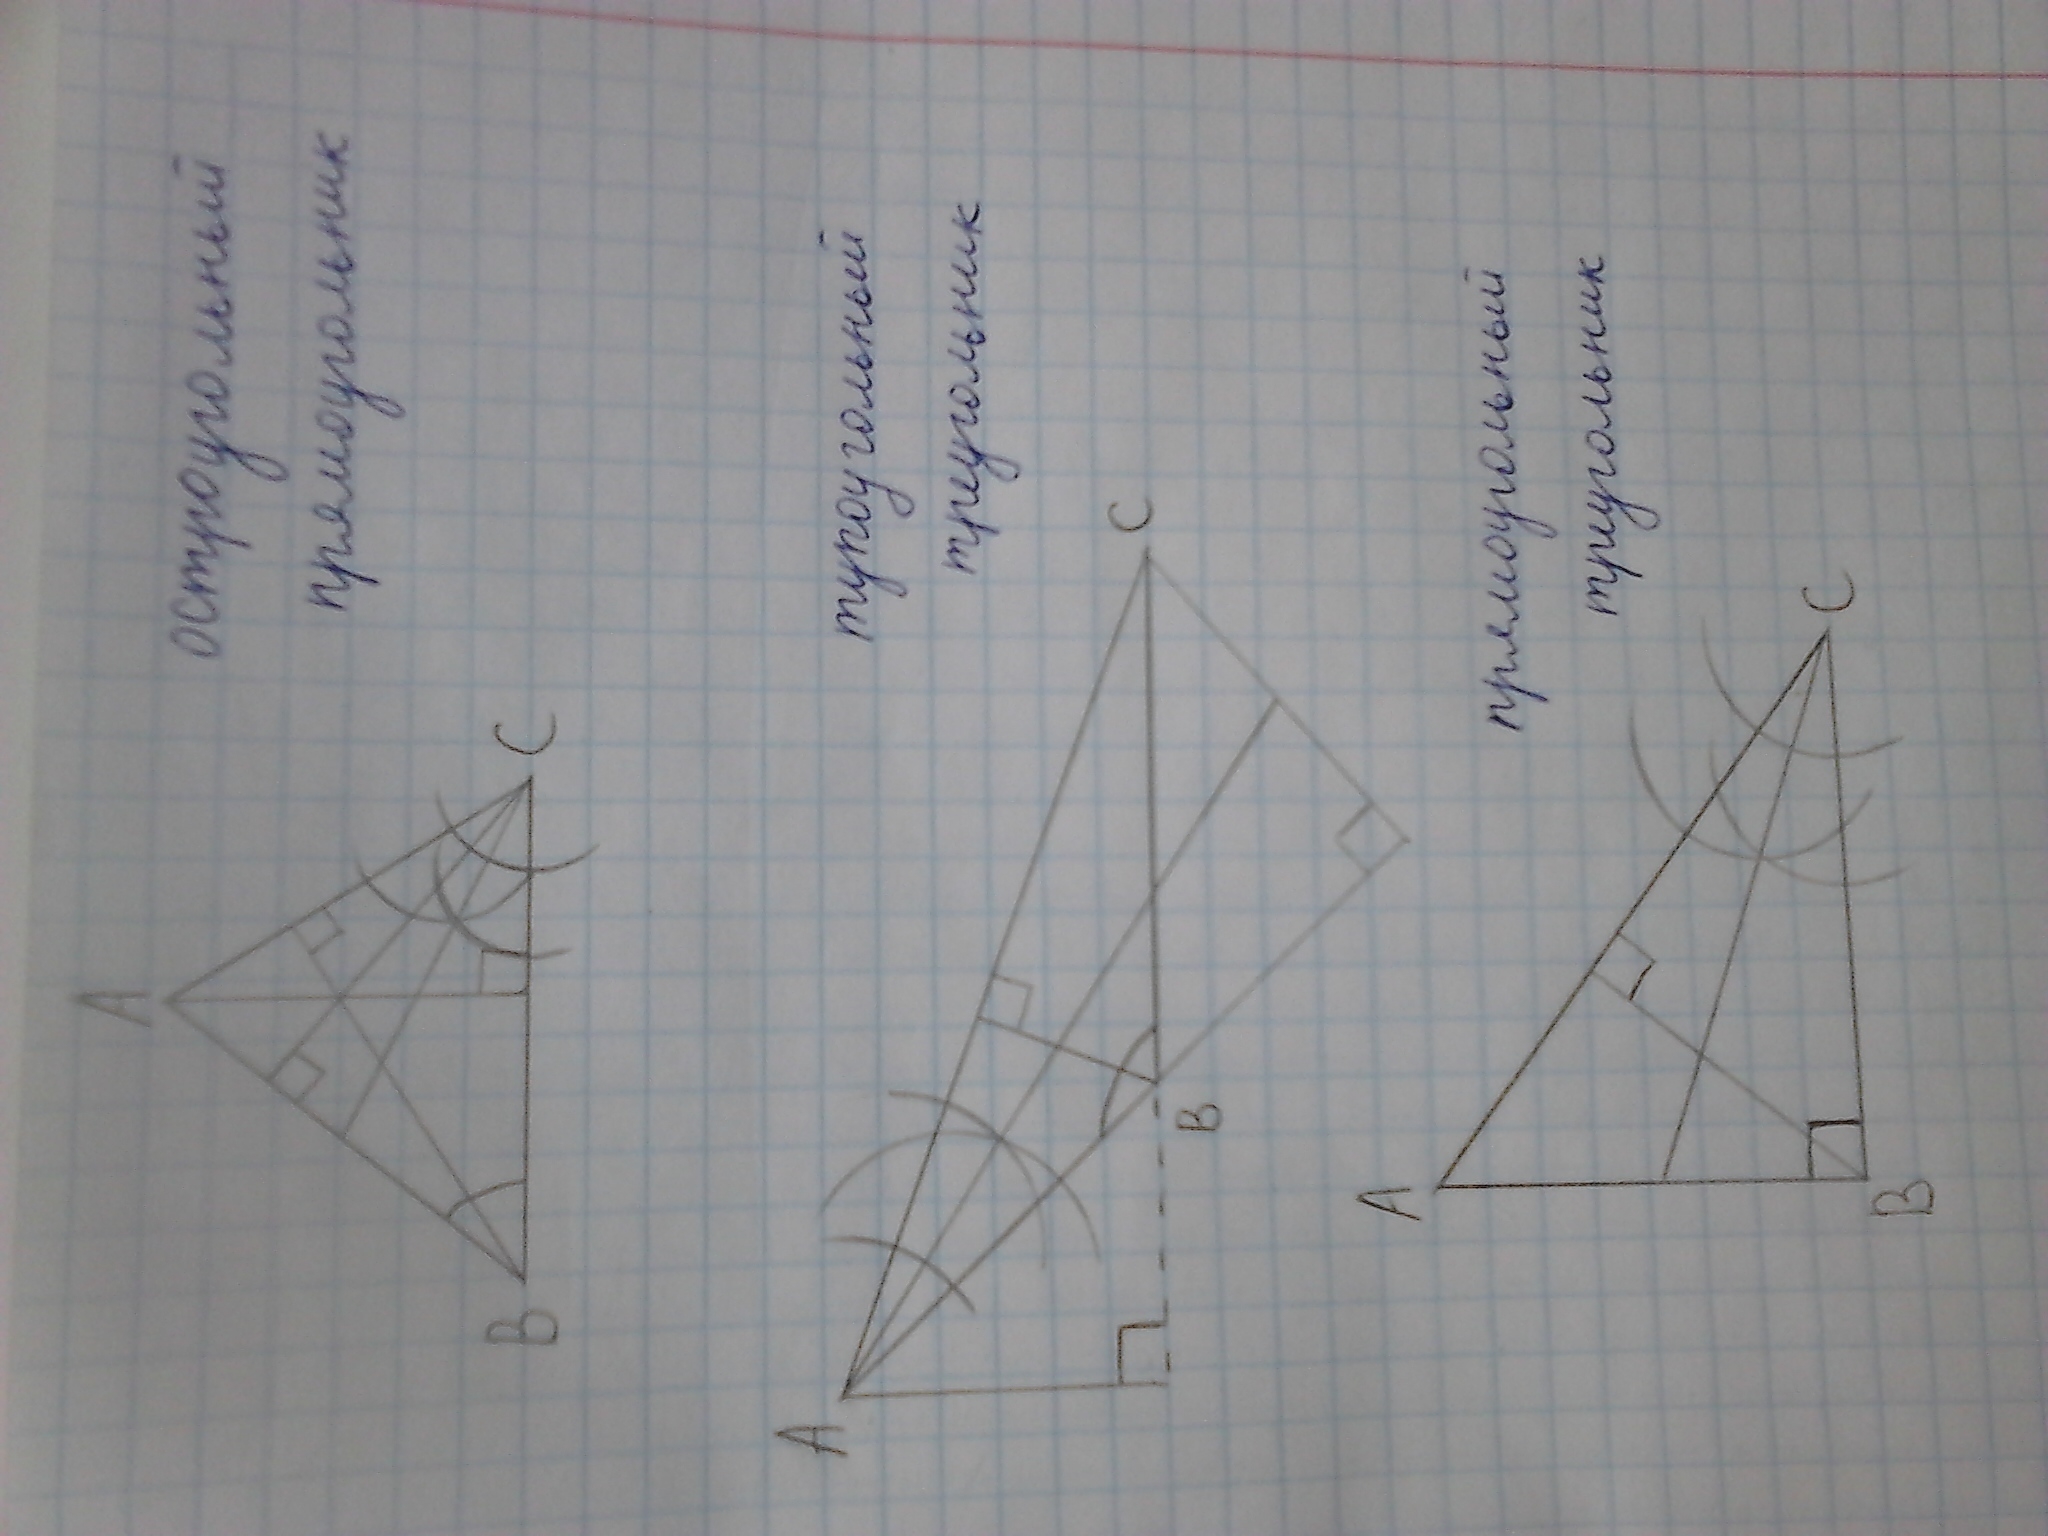 Тупоугольный треугольник изображен на рисунке. Тупоугольный треугольник рисунок. Тупоугольный треугольник на клетчатой бумаге. Тупоугольный треугольник на клетке.